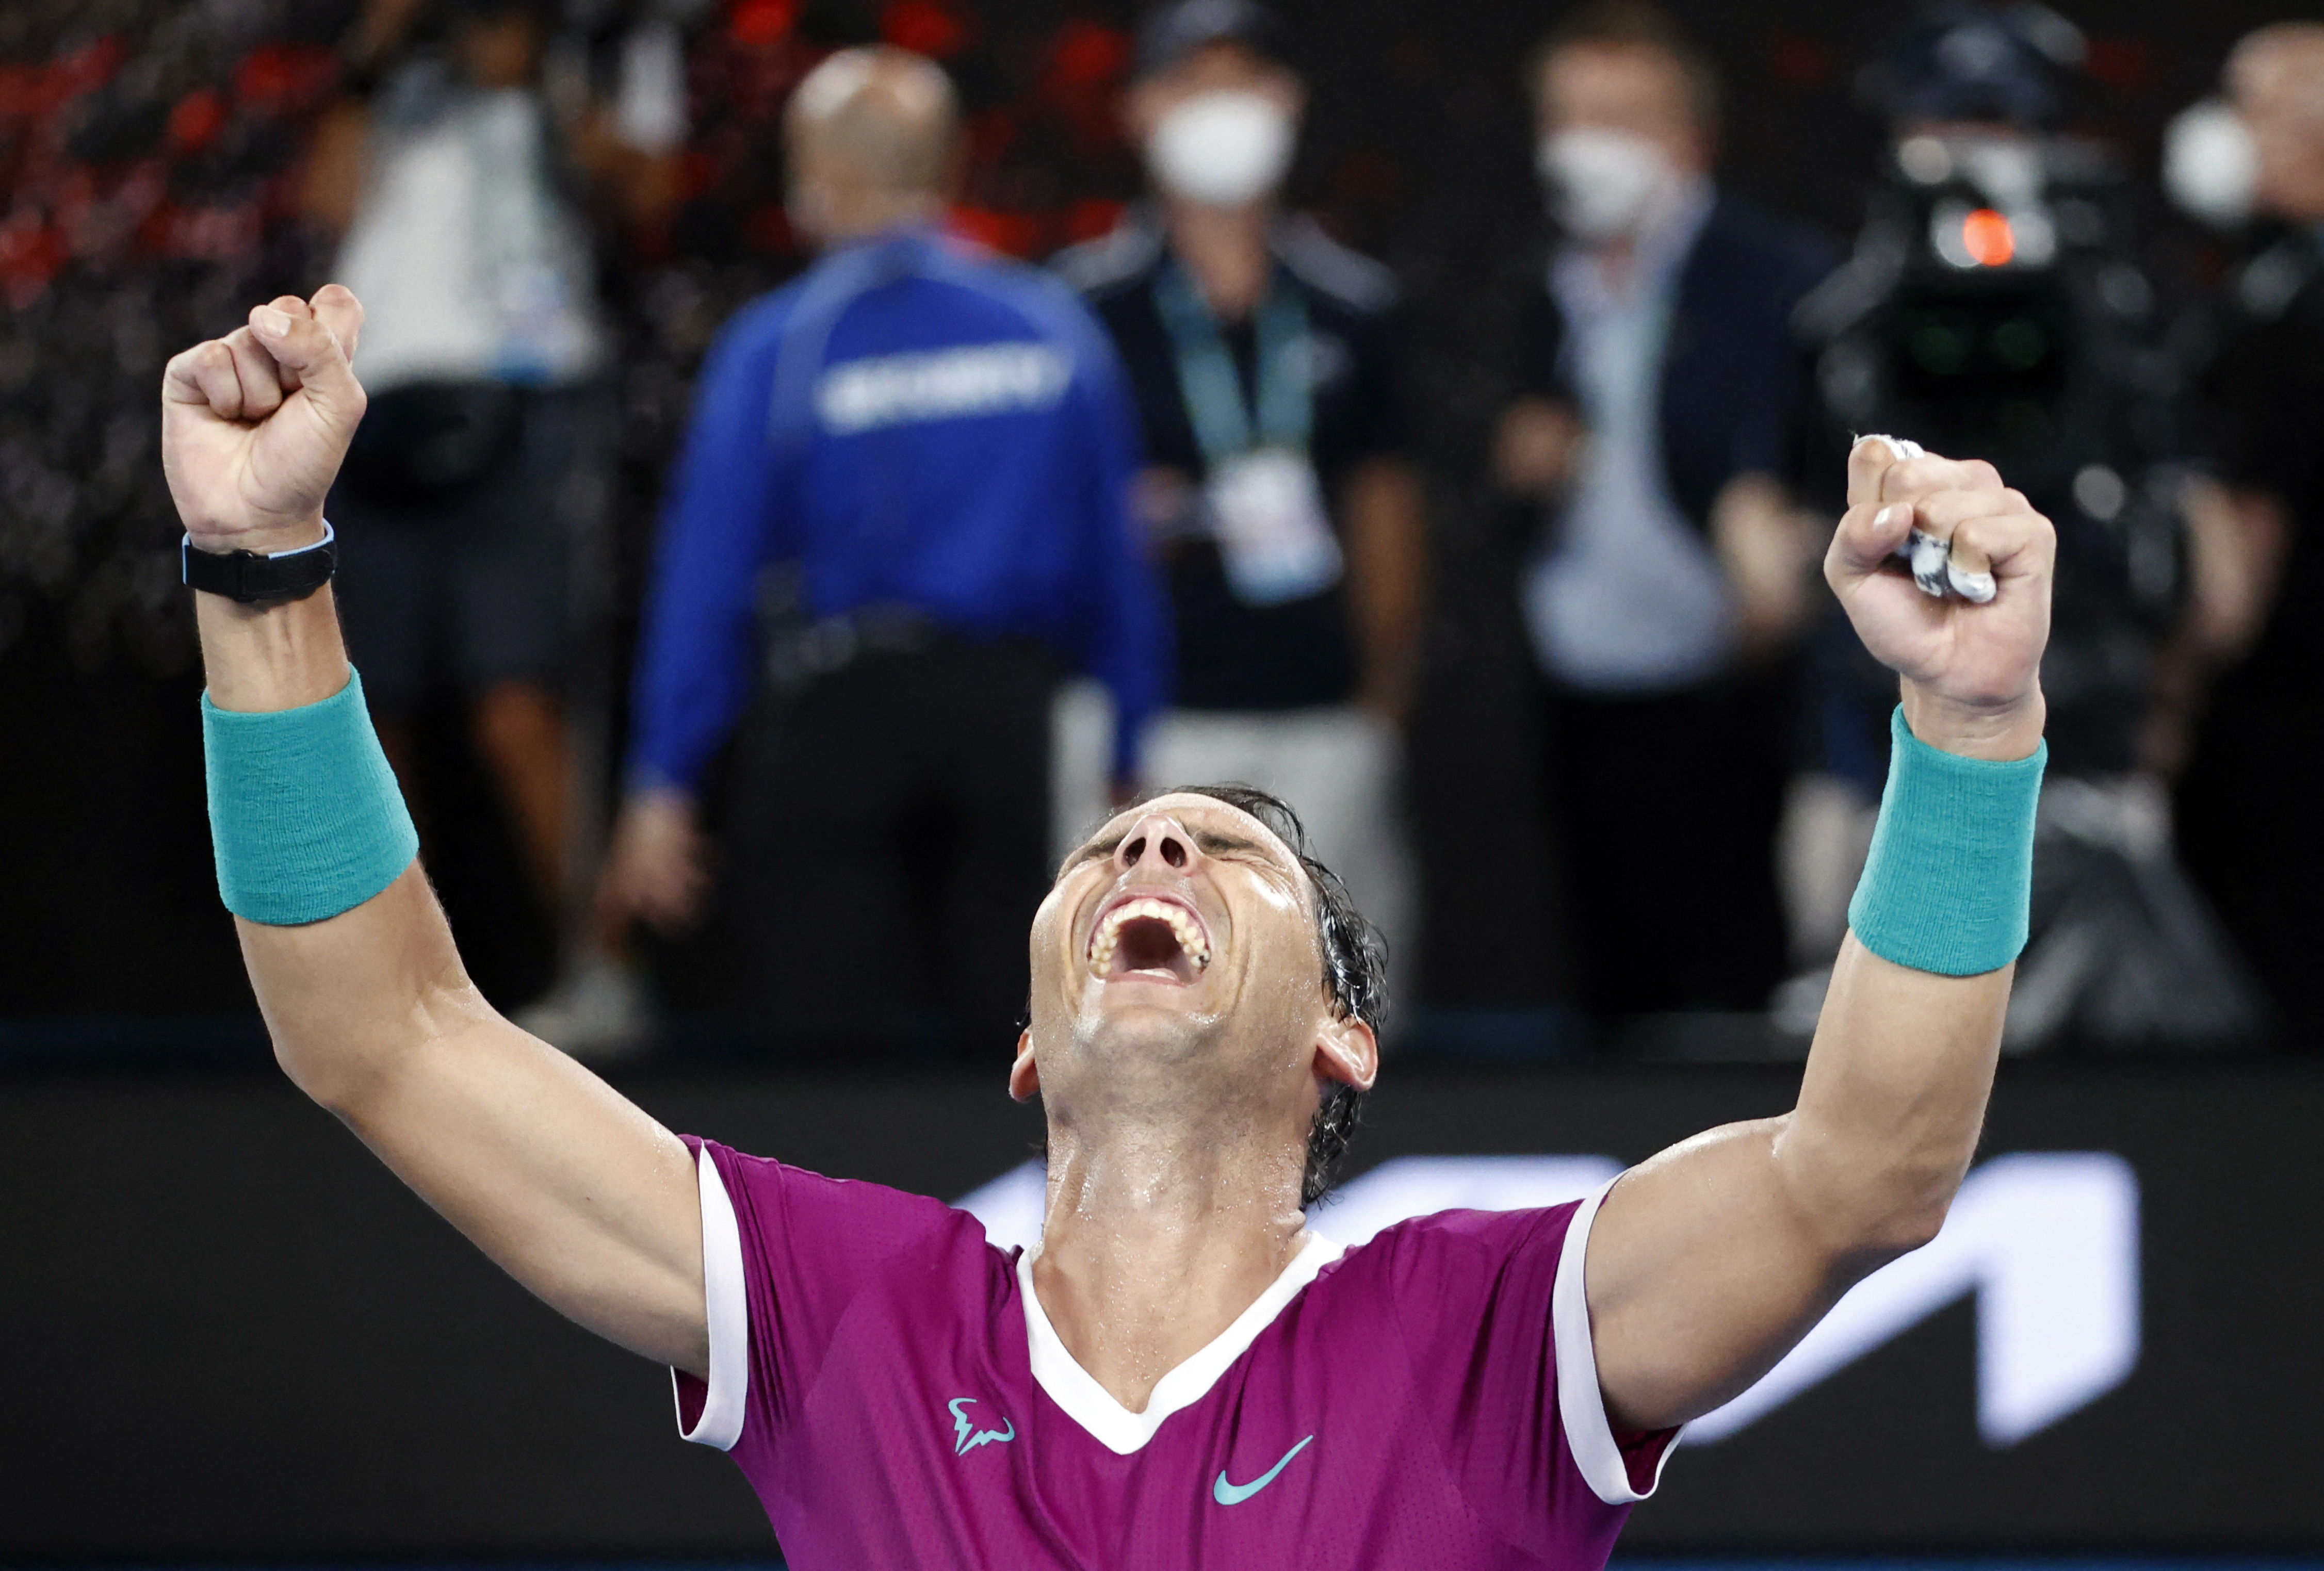 Épico: Rafael Nadal ganó el Abierto de Australia y se convirtió en el tenista con más Grand Slams